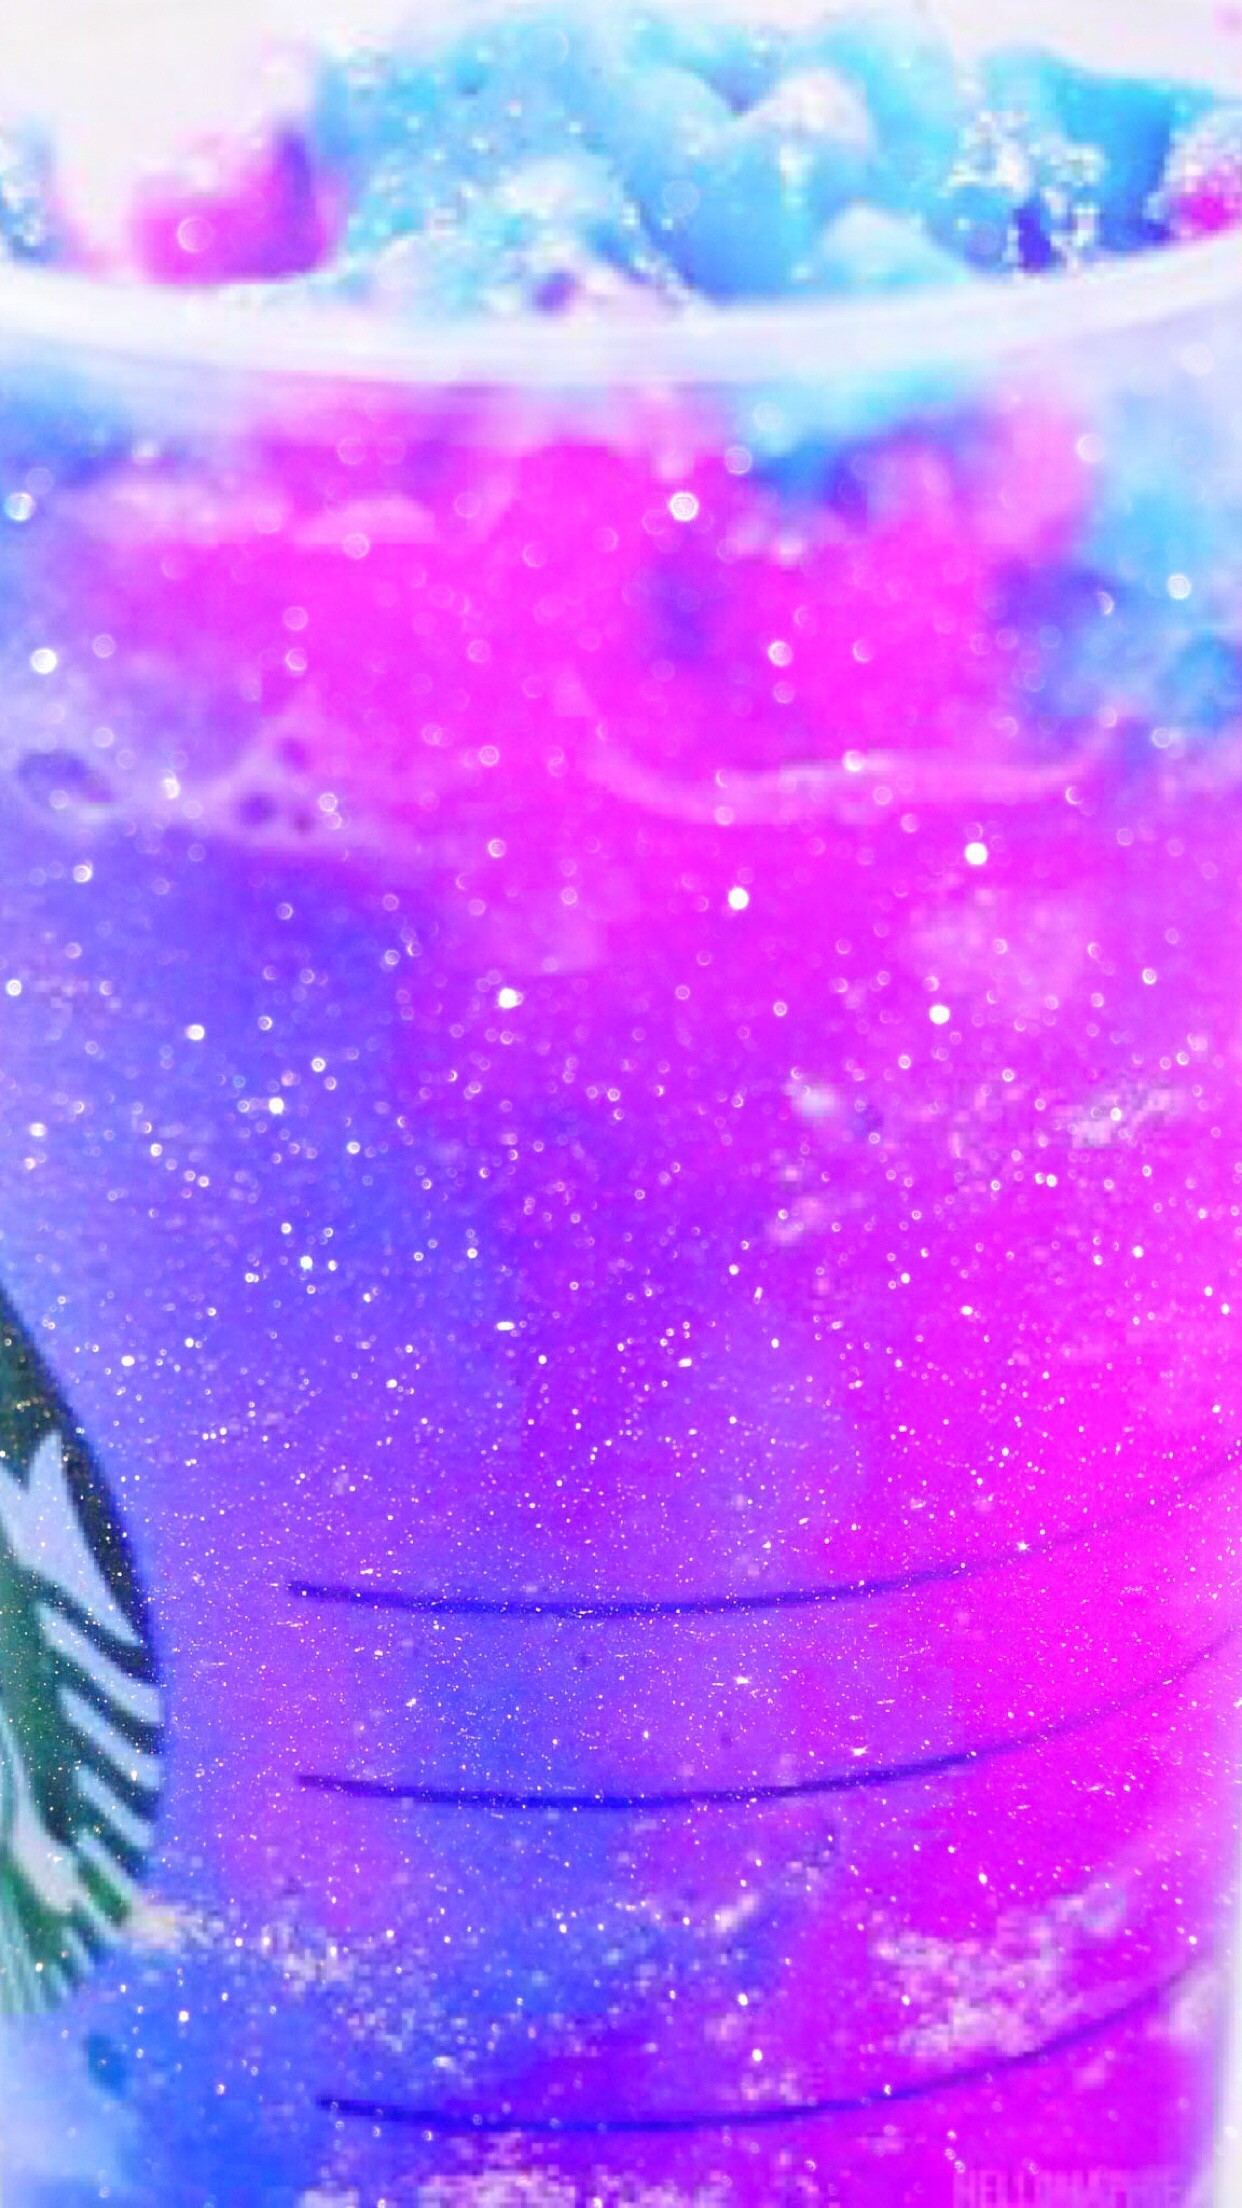 Starbucks, Galaxy, Wallpaper, Hd, Iphone, Pink, Purple - Galaxy Drink Starbucks - HD Wallpaper 